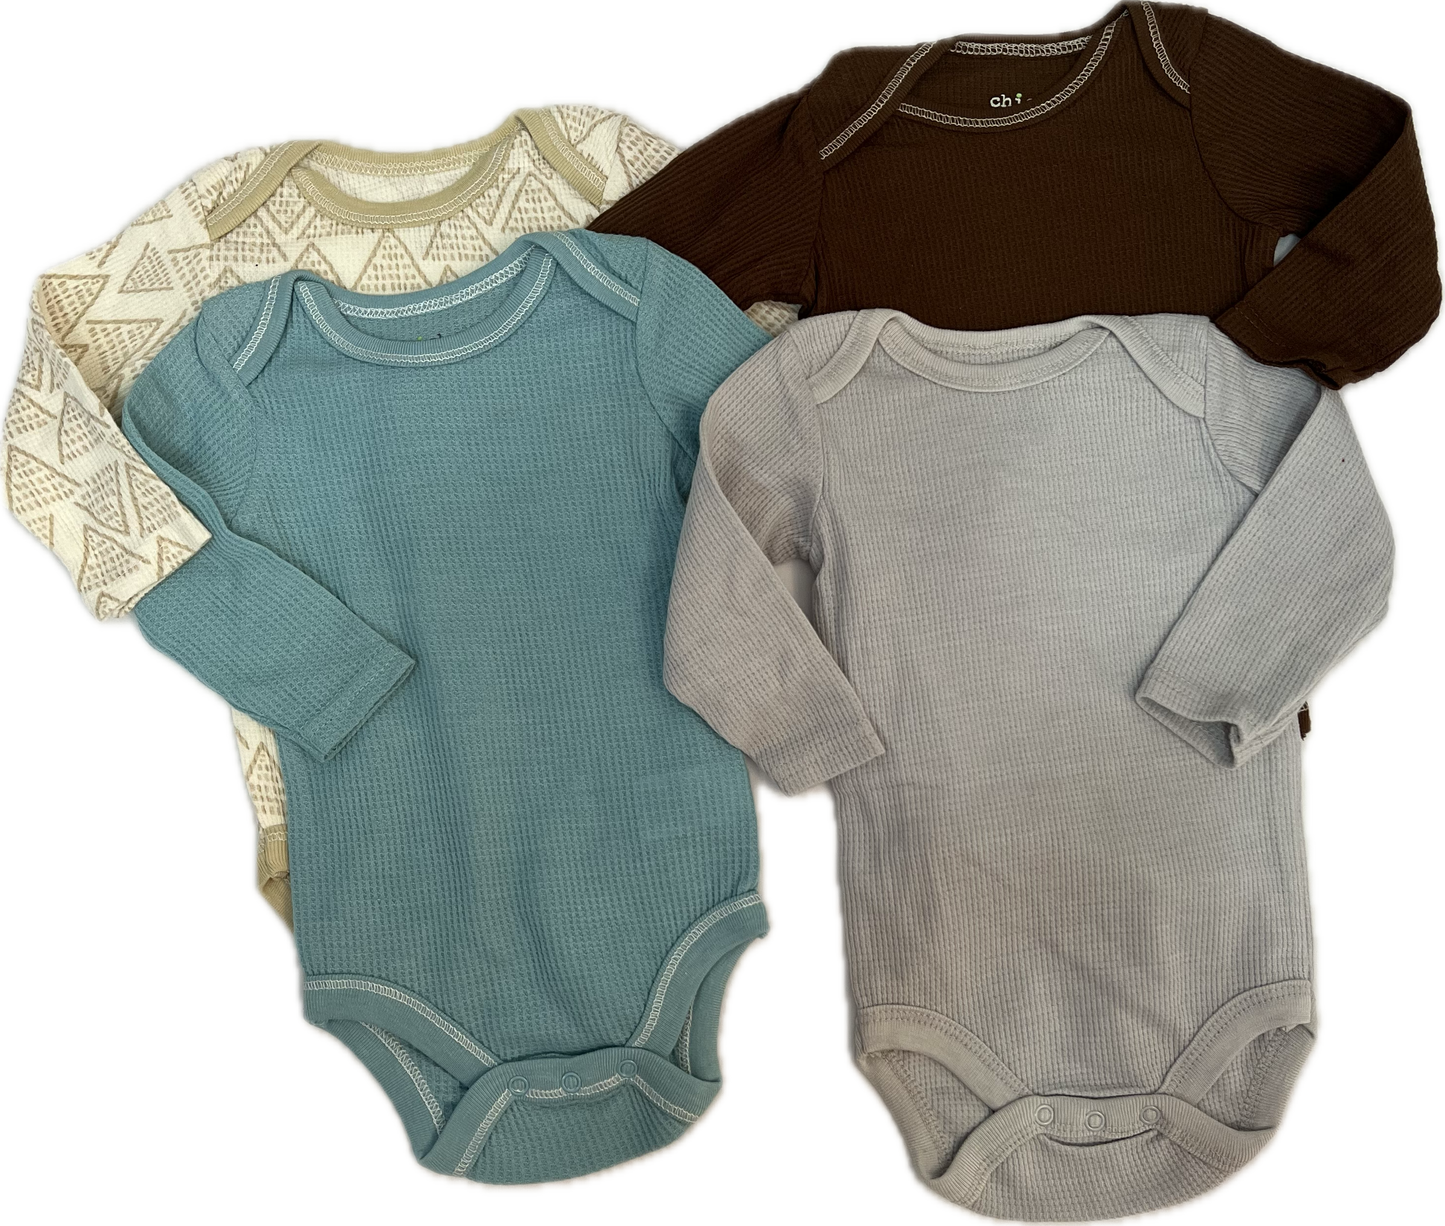 Set / Kit 4 bodys basico acanalados beige, gris, marron, azul 3-6 meses